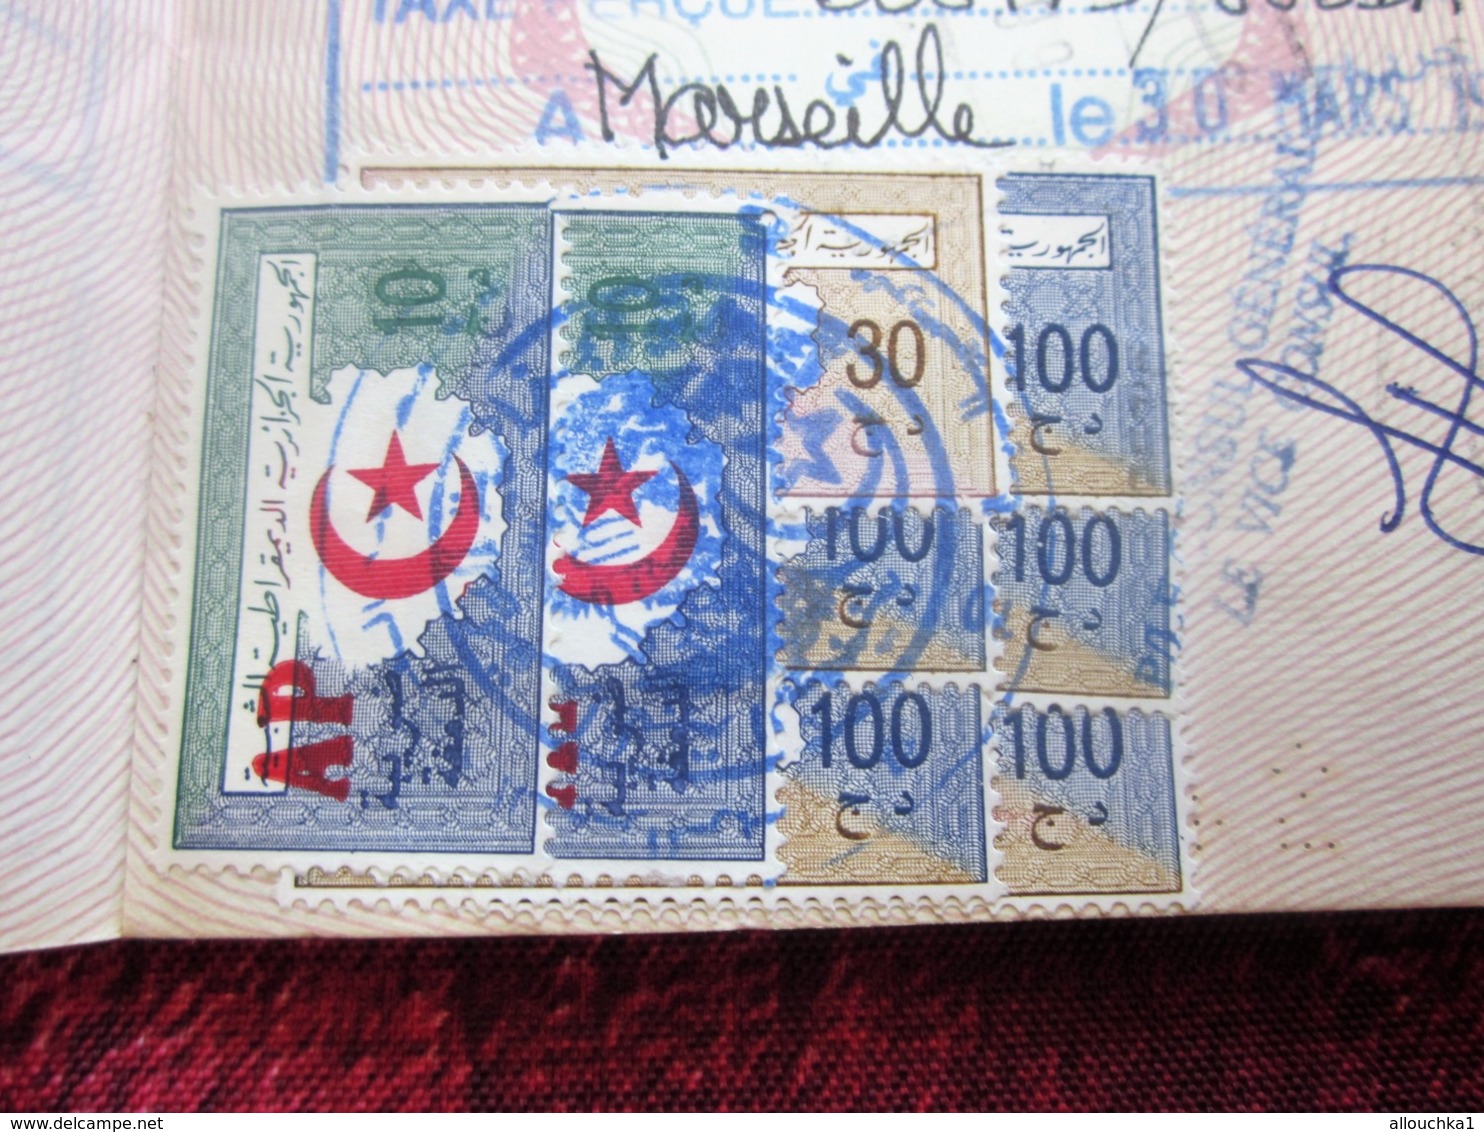 FRANCE PASSEPORT PASSPORT Perimé C. D. Né 1949-CHOISY-LE-ROY-FISCAL 200F X 2 DÉLIVRÉ 1998 VISAS FISCAUX ALGÉRIE